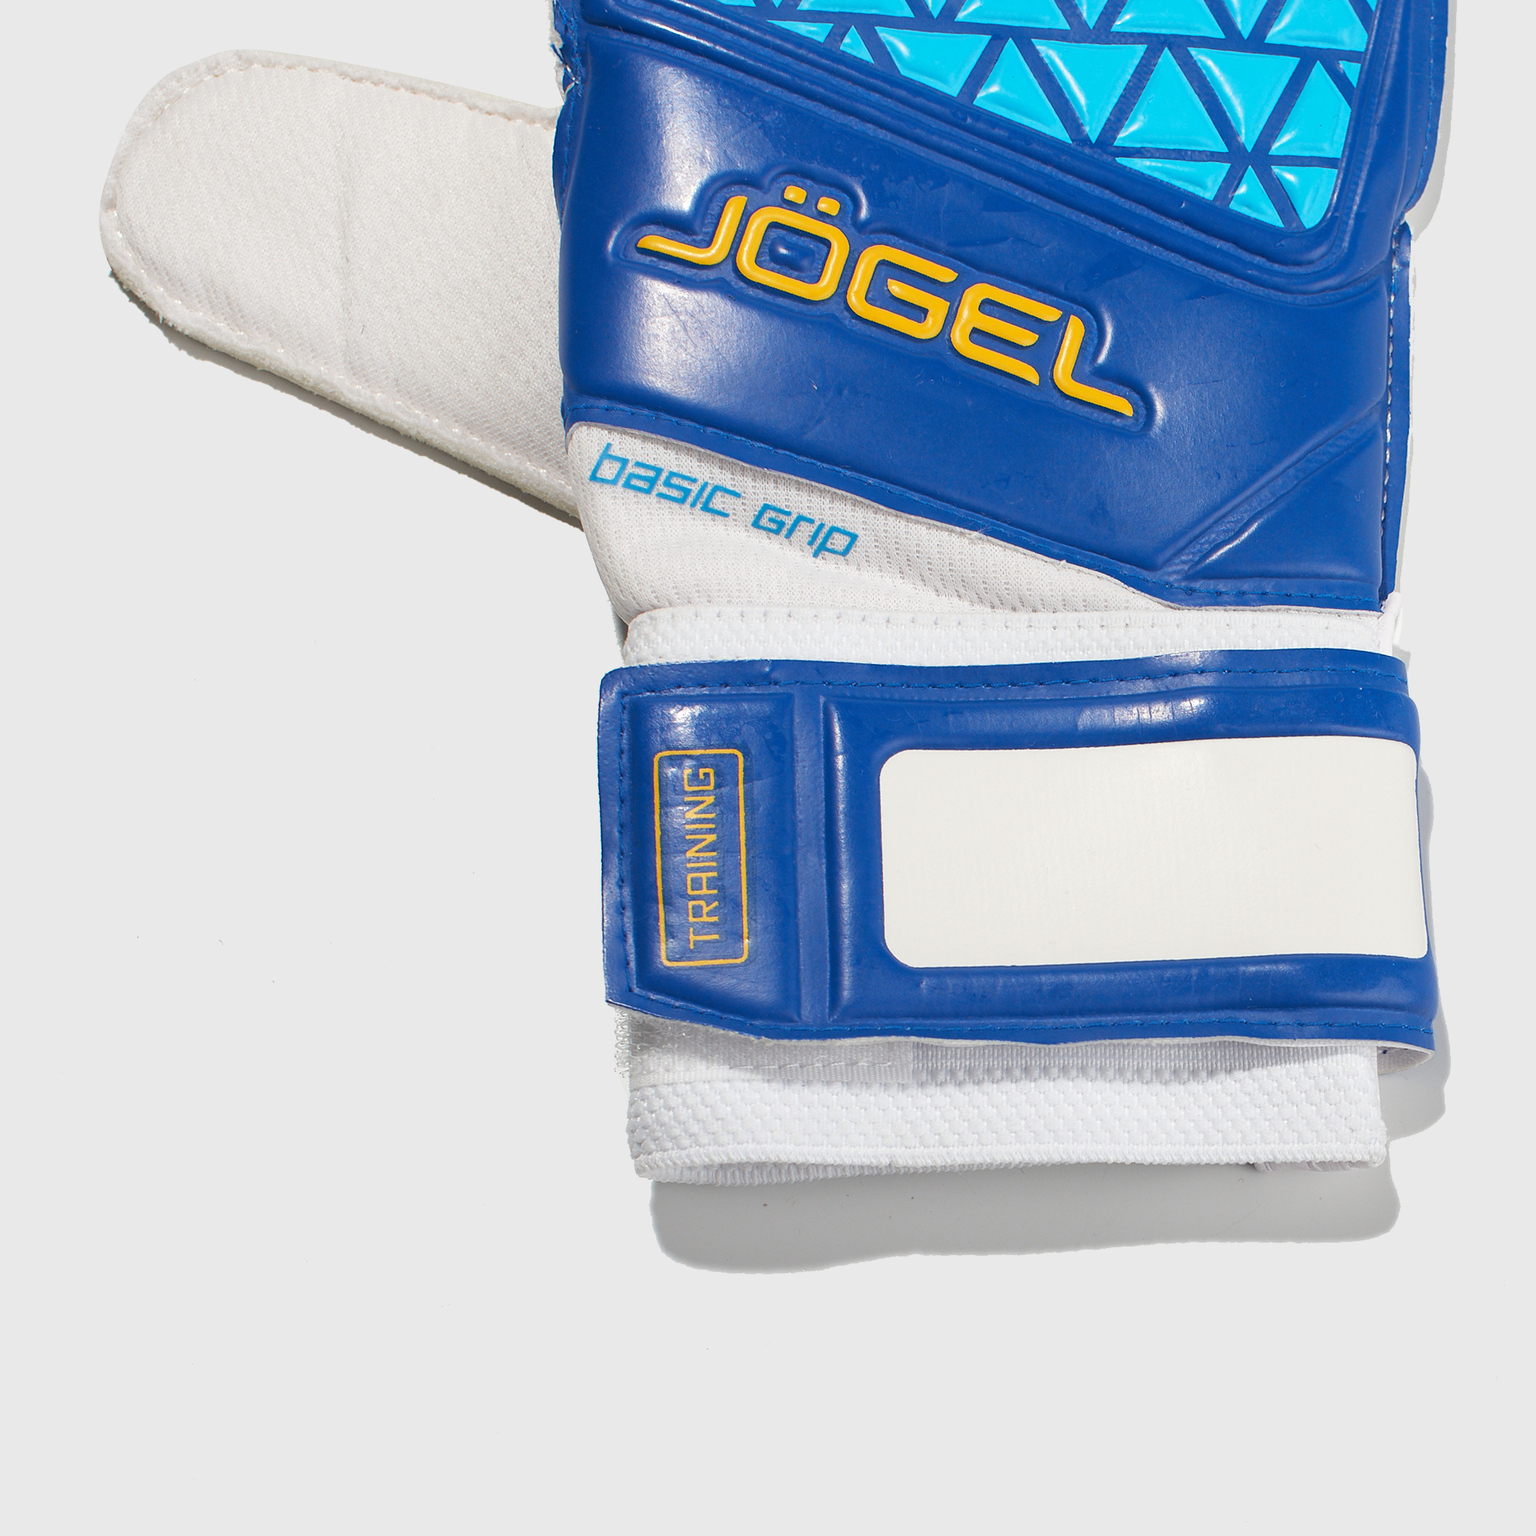 Перчатки вратарские Jogel Nigma Pro Training Flat